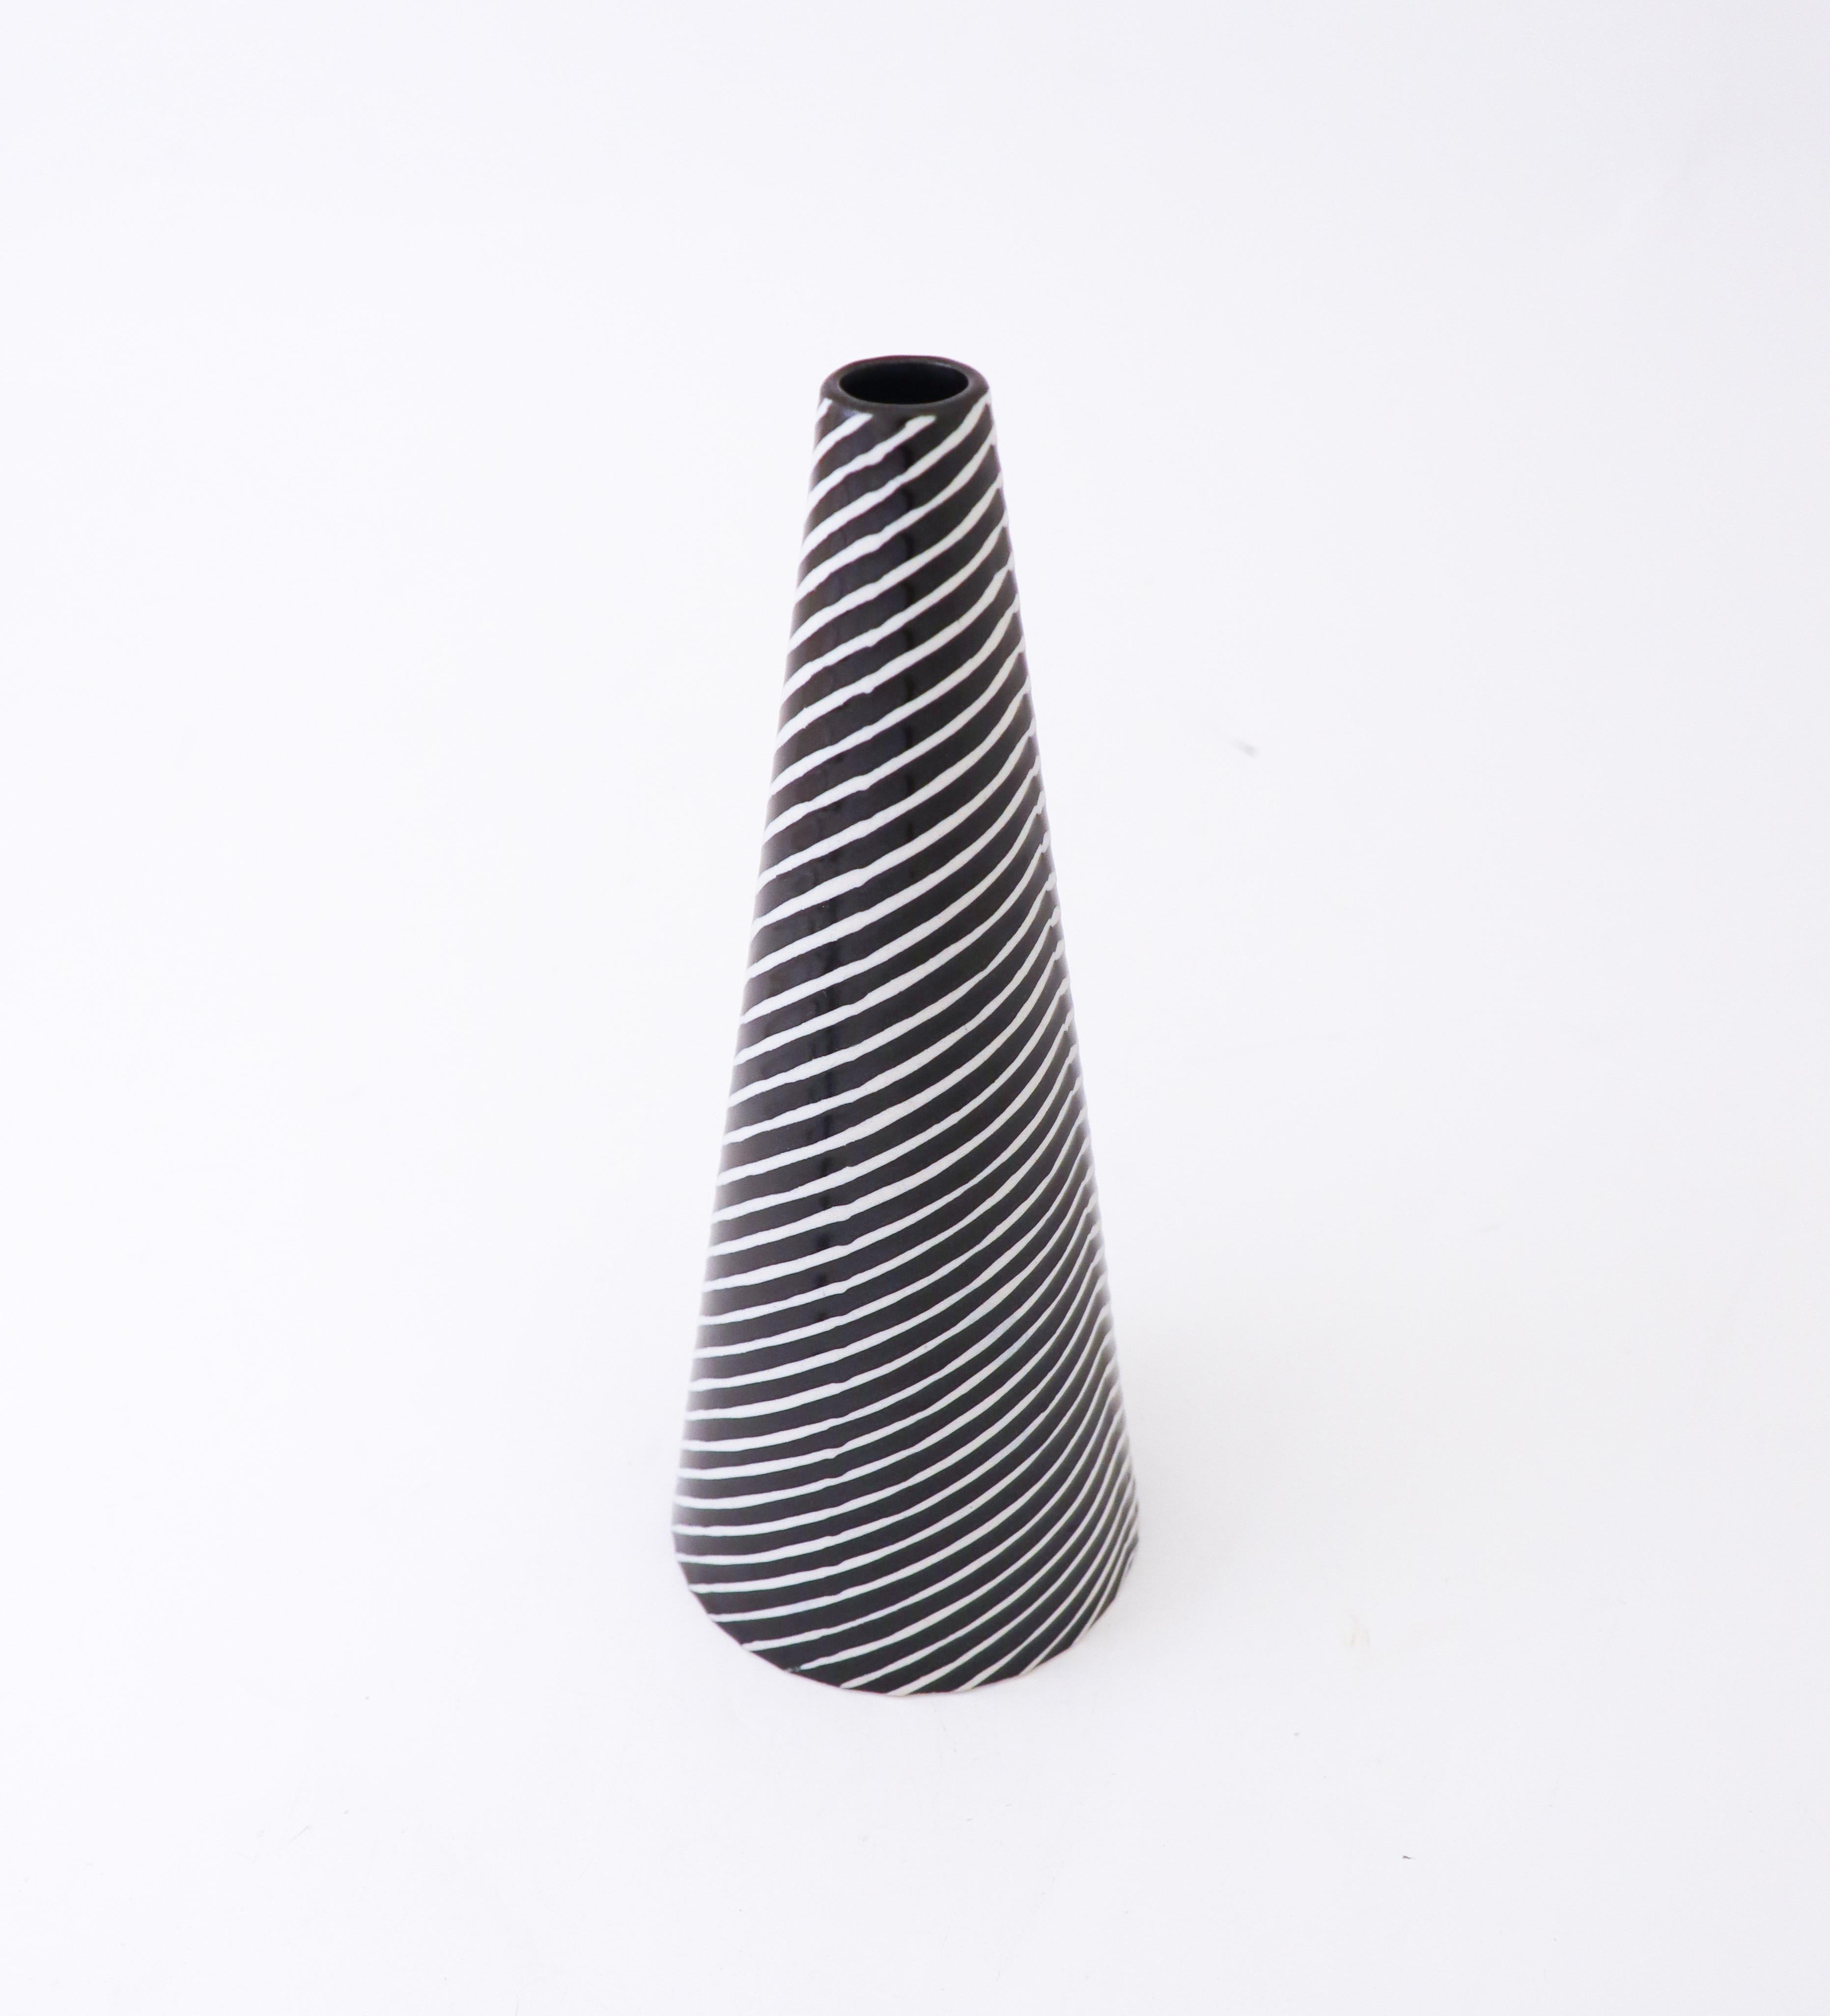 Swedish Black & White Vase Domino, Stig Lindberg, Gustavsberg